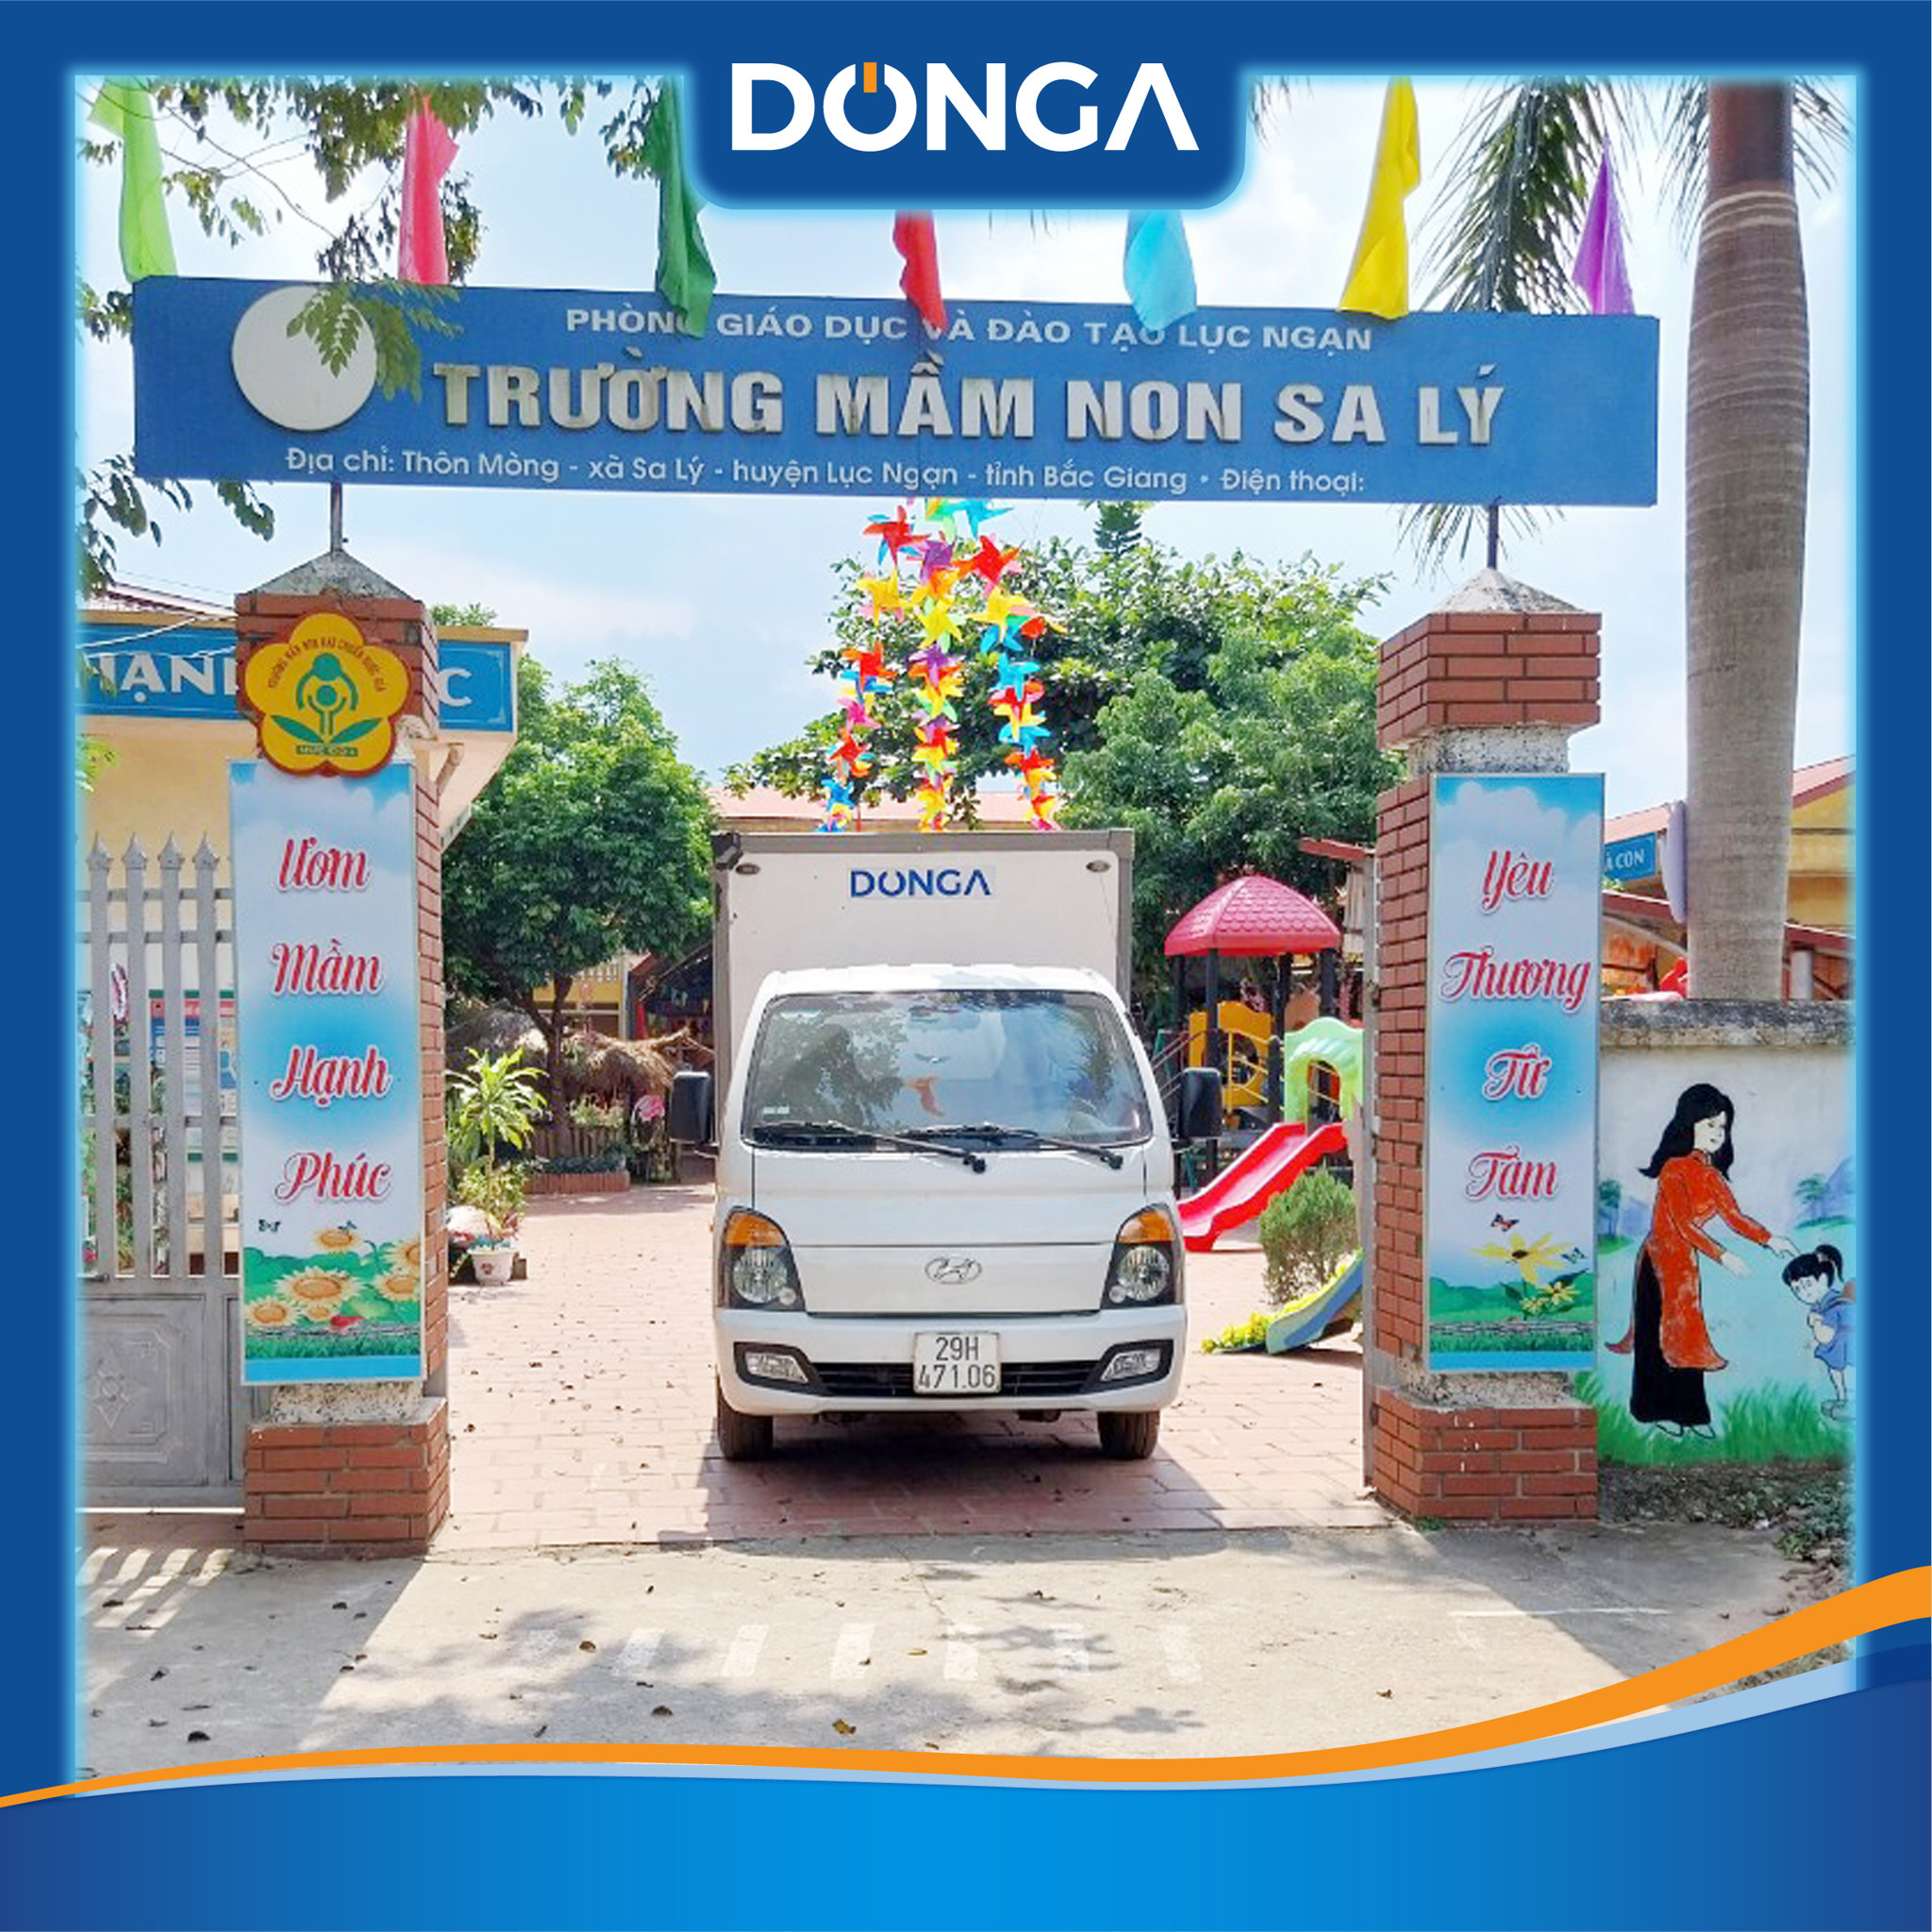 JA Solar Việt Nam trao tặng máy lọc nước học đường DONGA